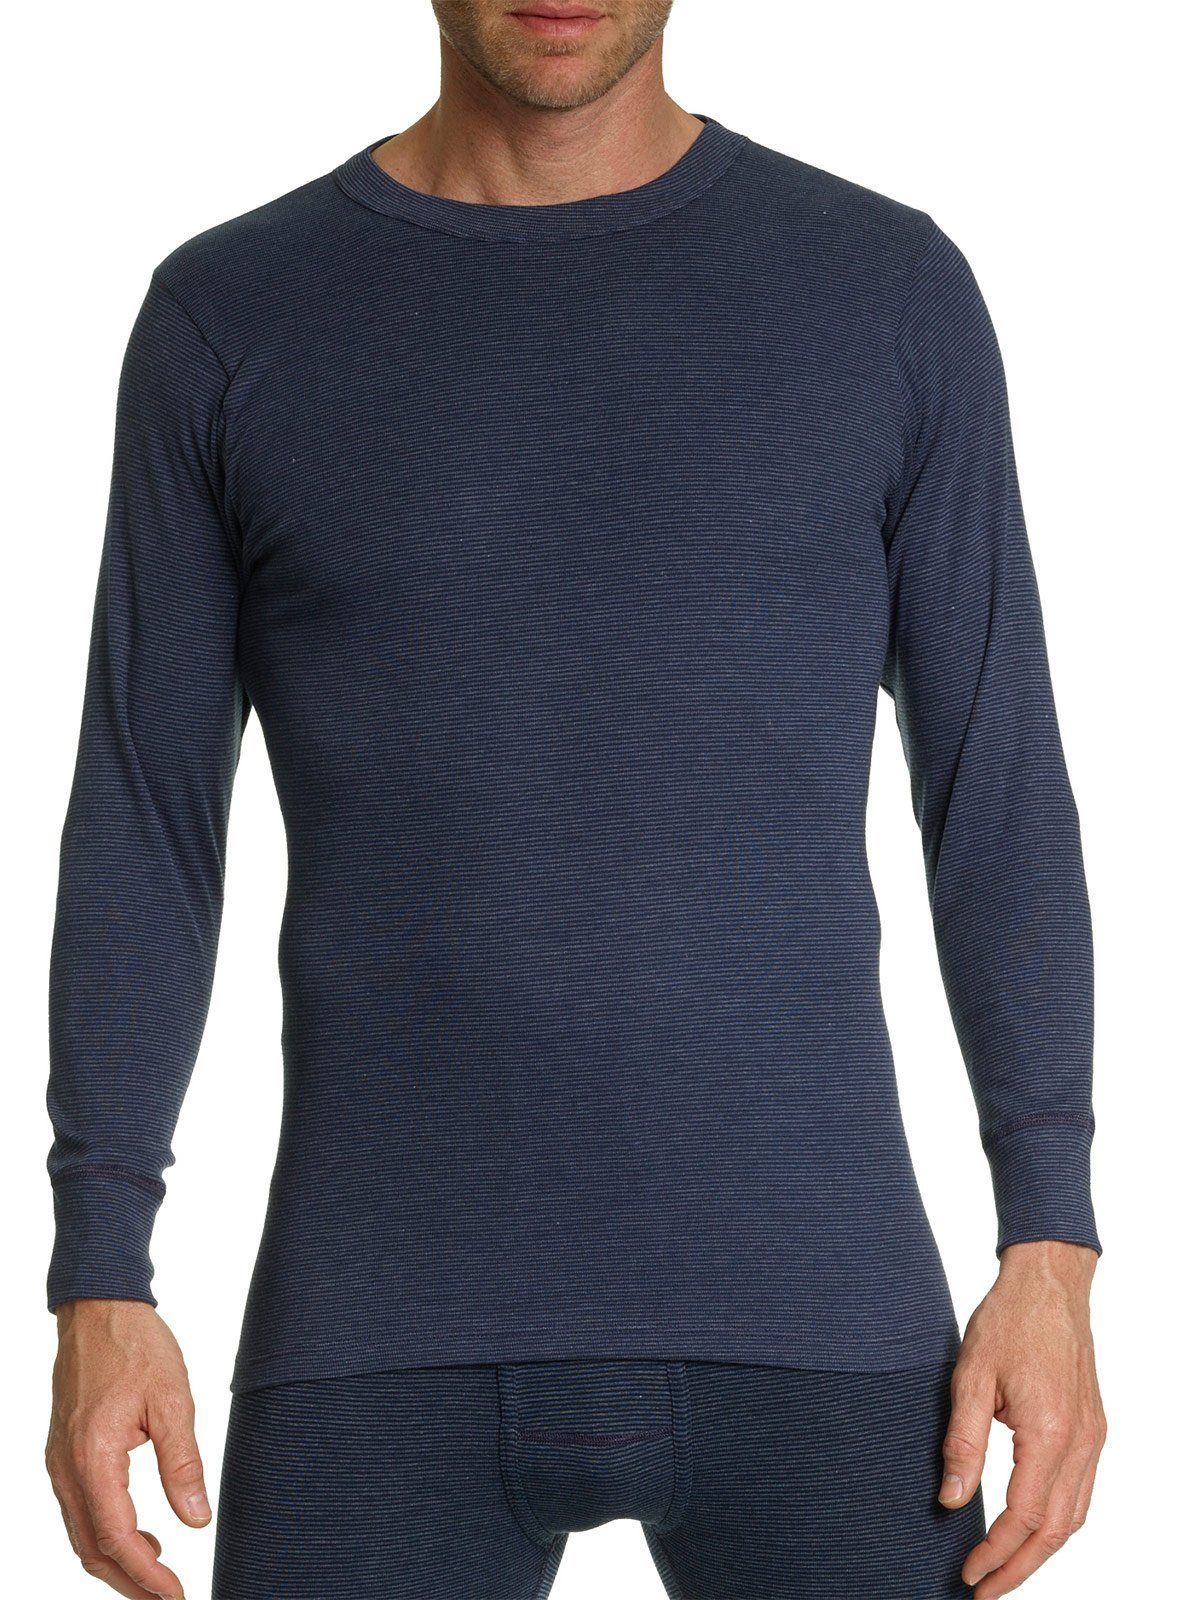 KUMPF Unterhemd Herren Langarm Shirt Klimafit (Stück, 1-St) Materialmix maritim | Unterhemden